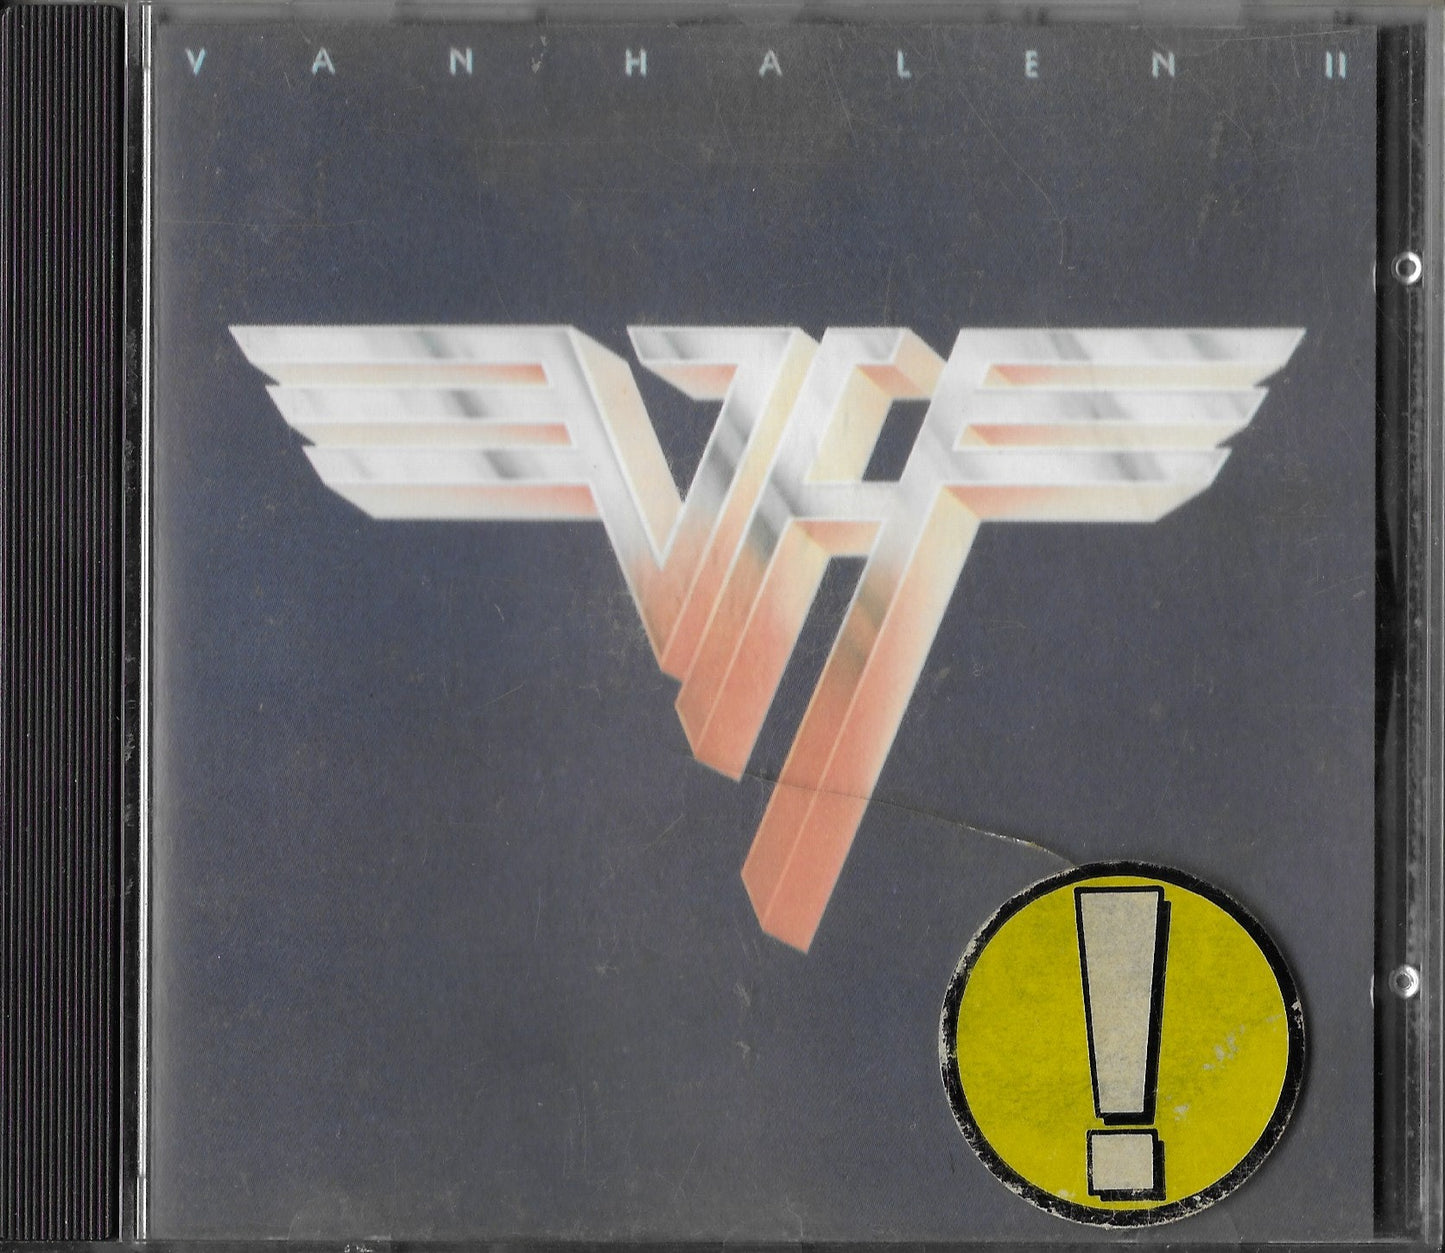 VAN HALLEN - Van Halen II